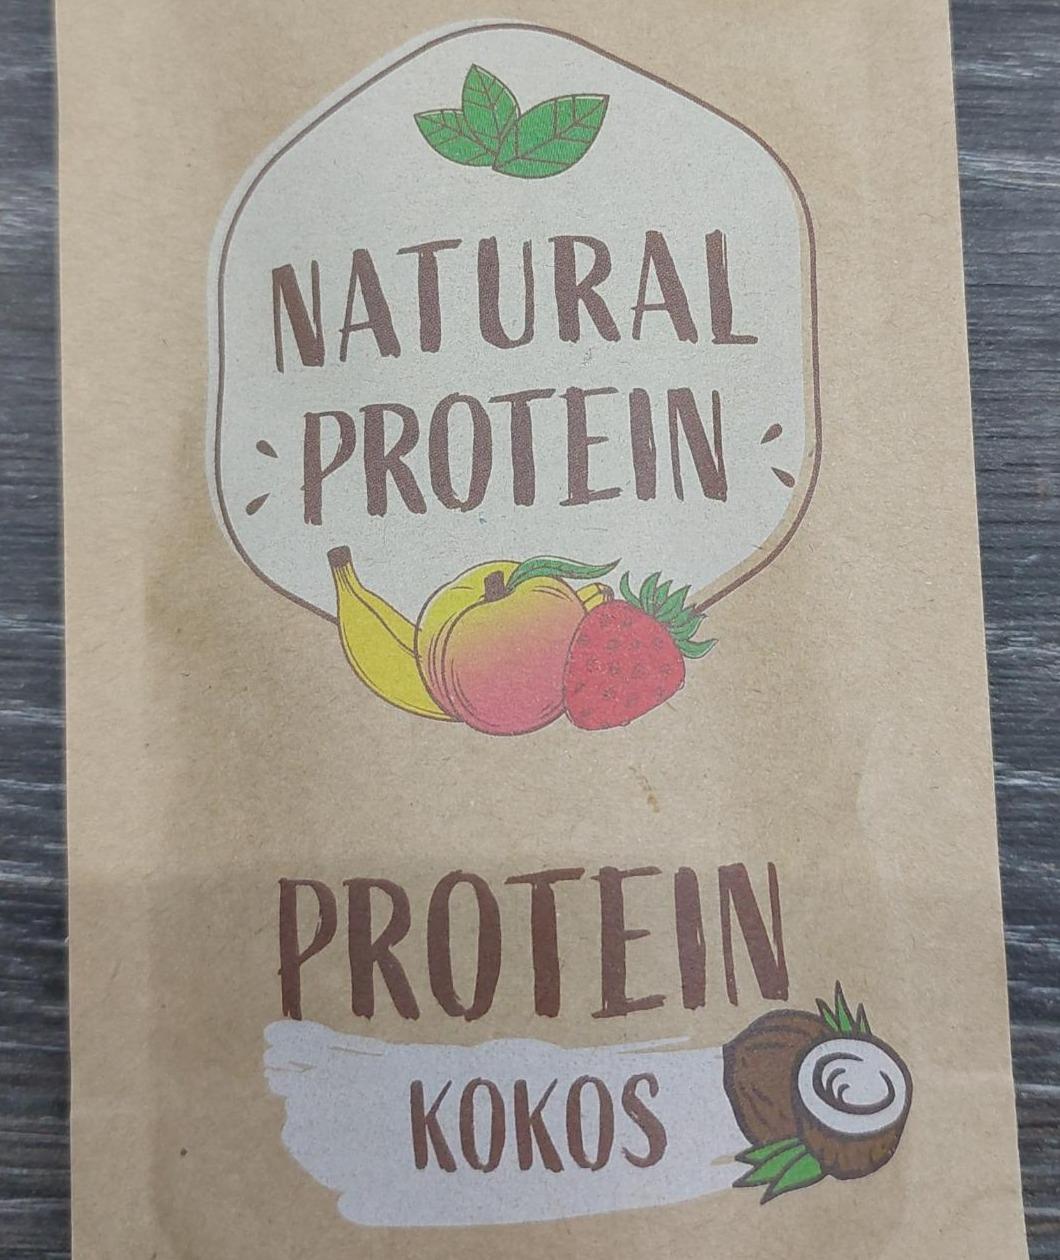 Fotografie - Protein Kokos Natural protein